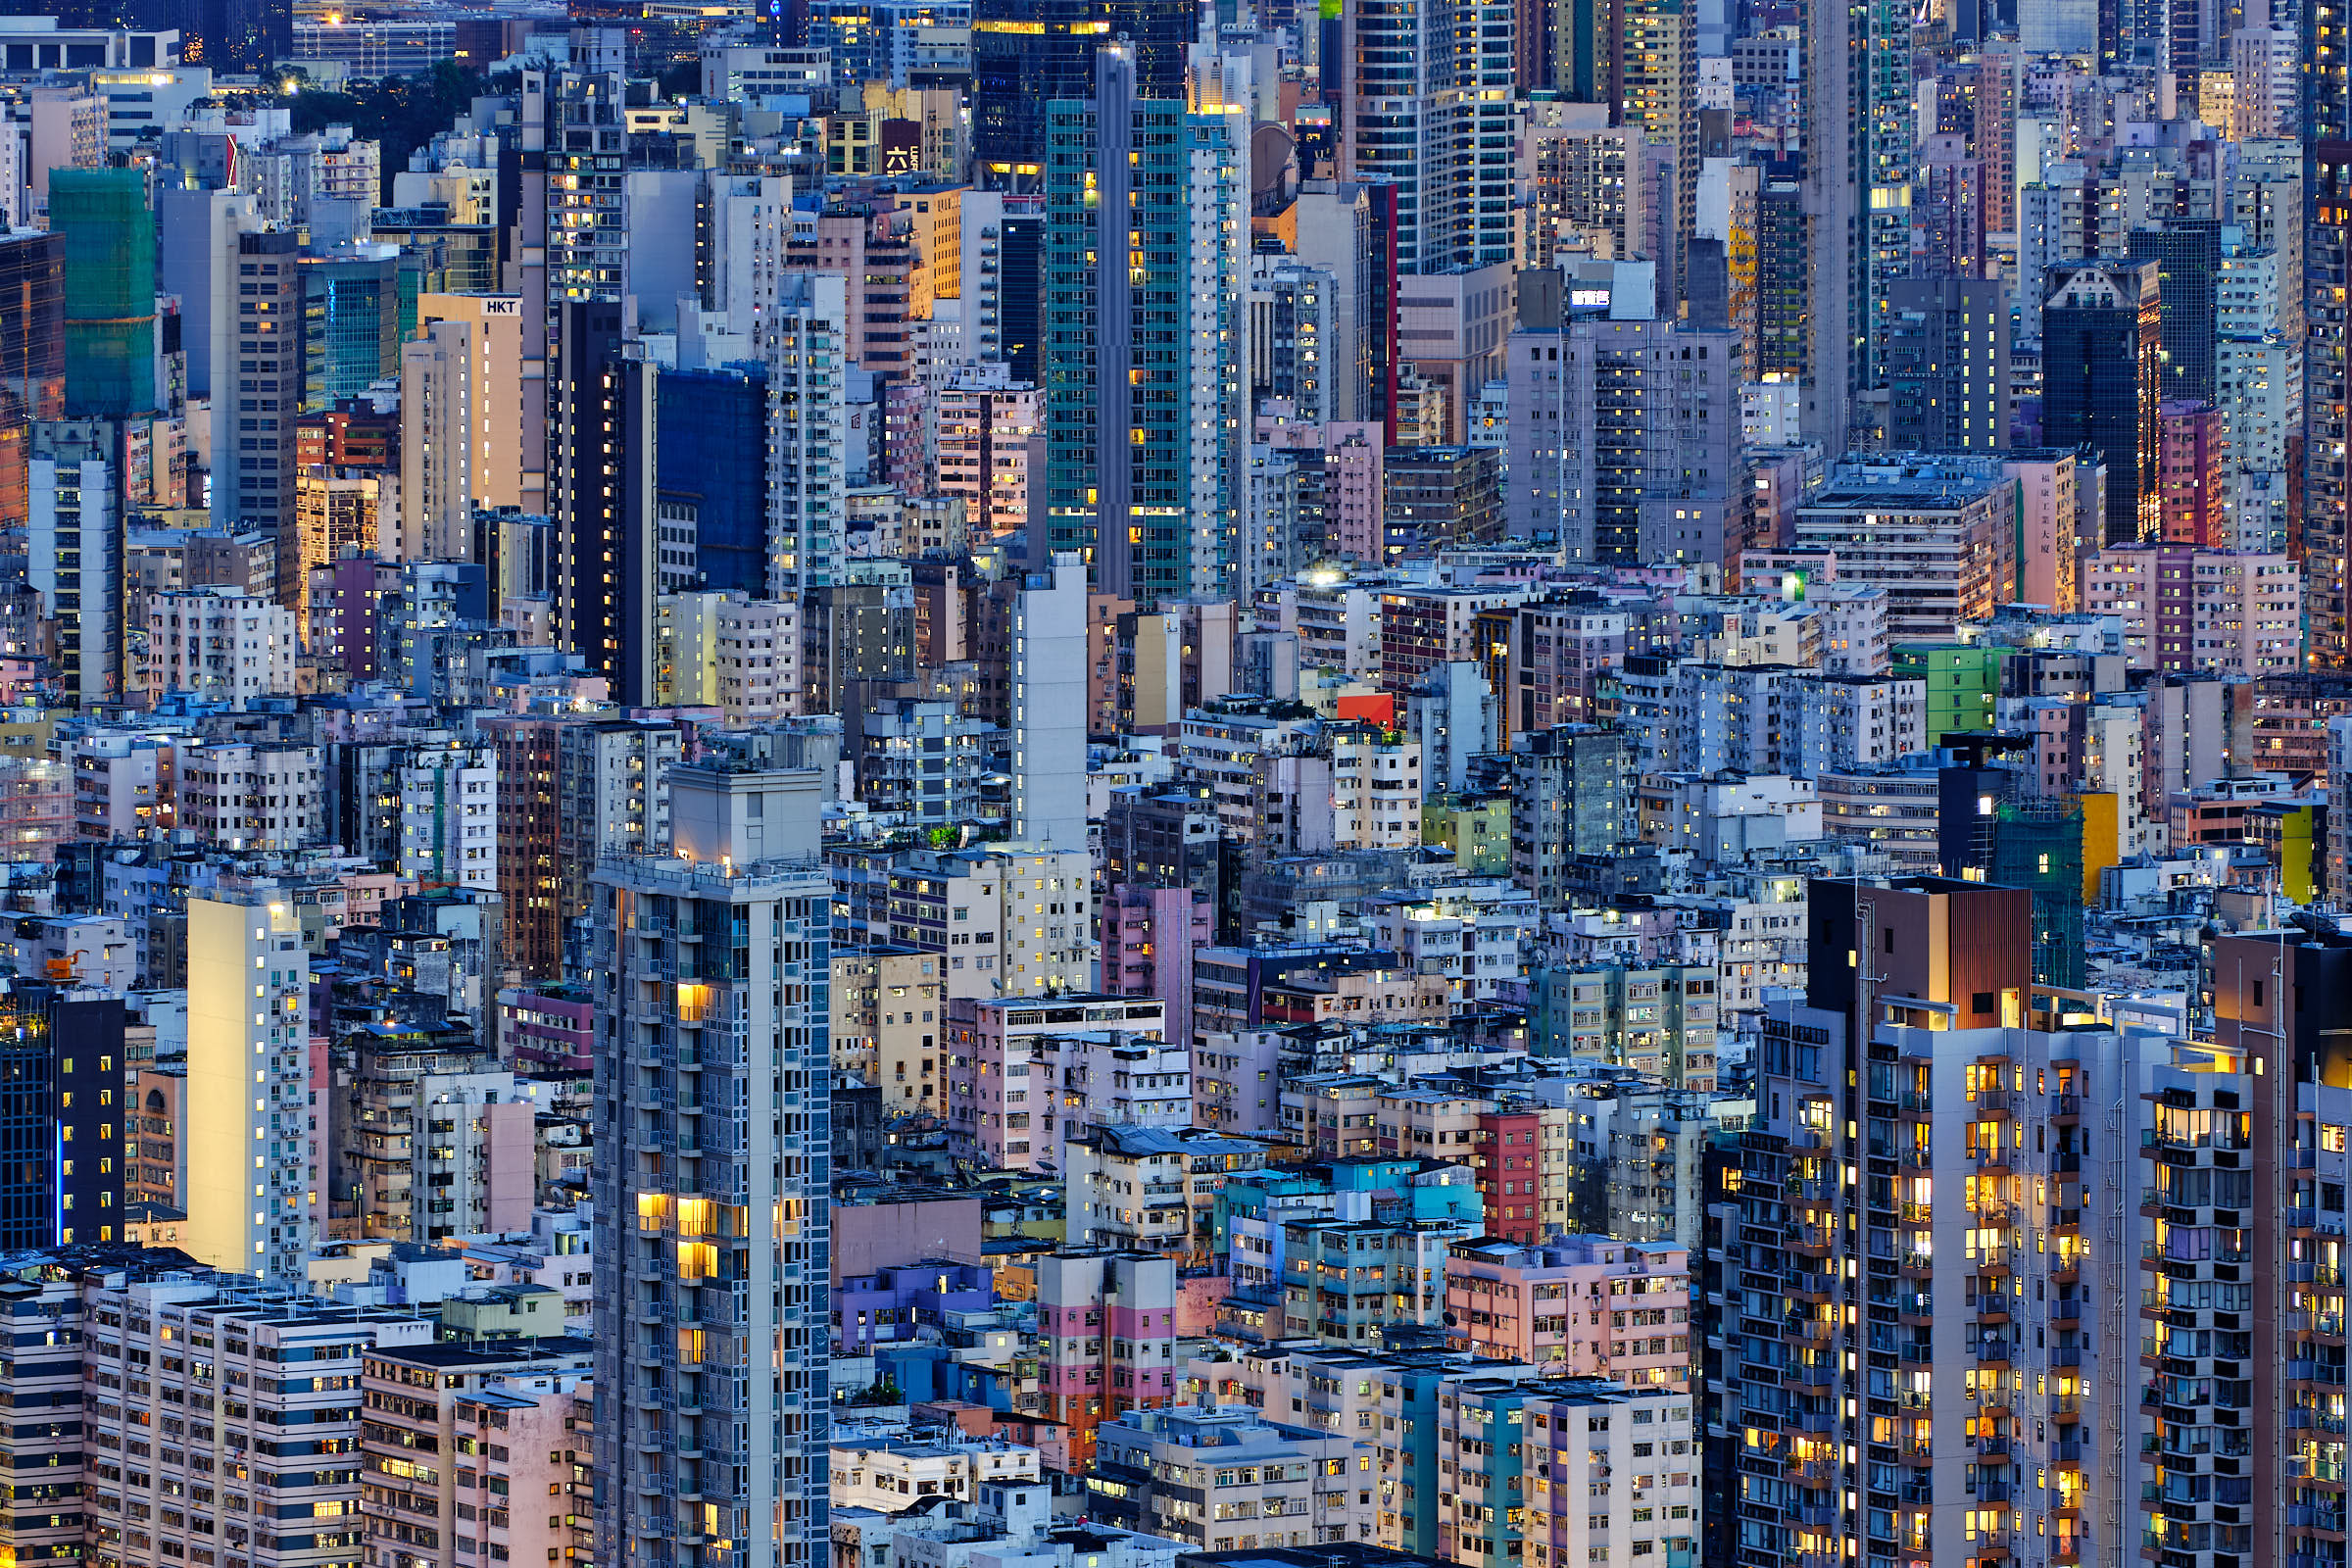 Crow's Nest Hong Kong skyline view